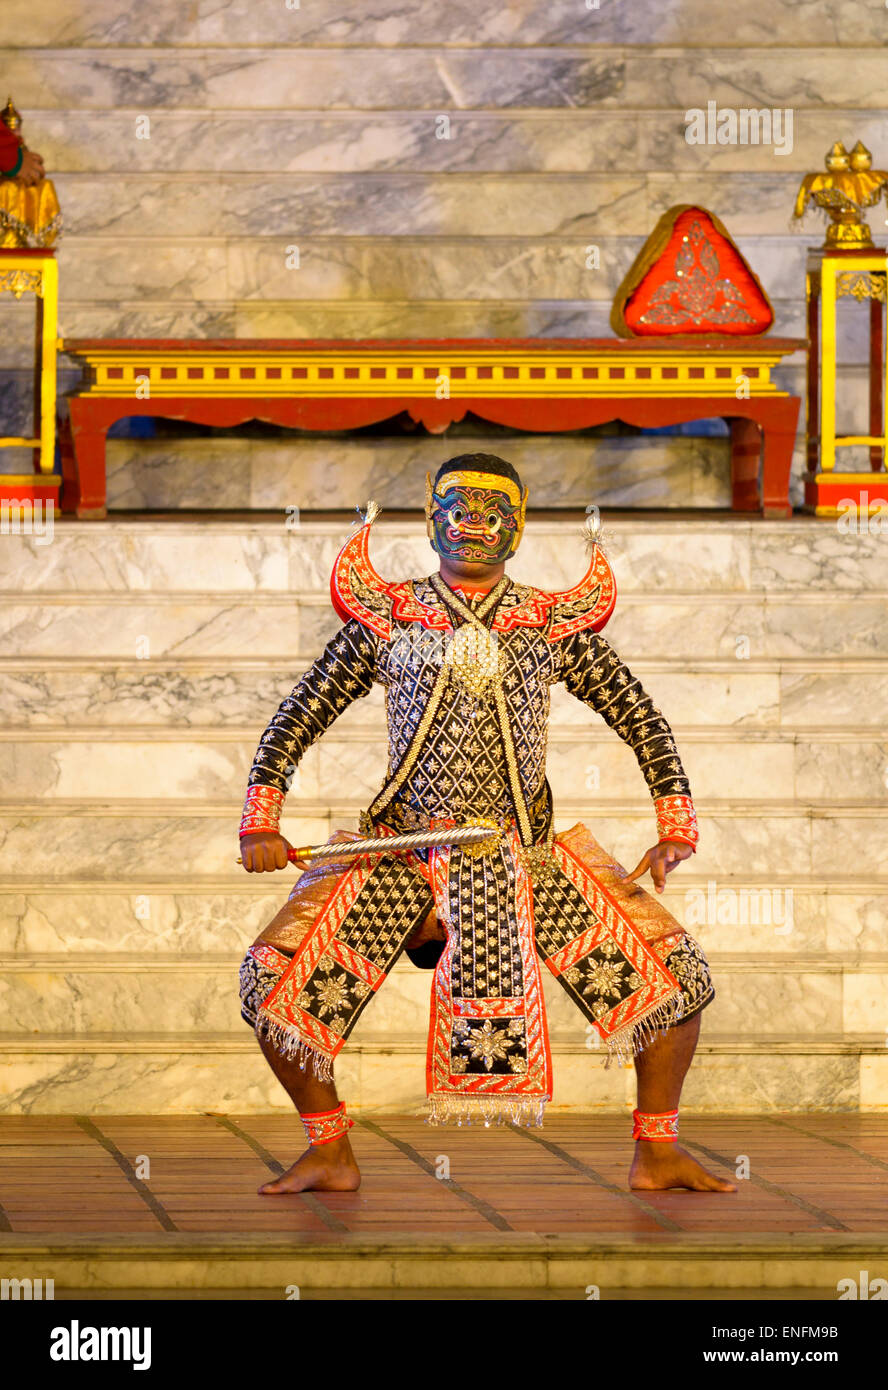 Théâtre masqué Khon, Thaïlande. Danseur, acteur / costume traditionnel, masque, substitution, une idée typiquement Thai. Épique Ramayana. Banque D'Images